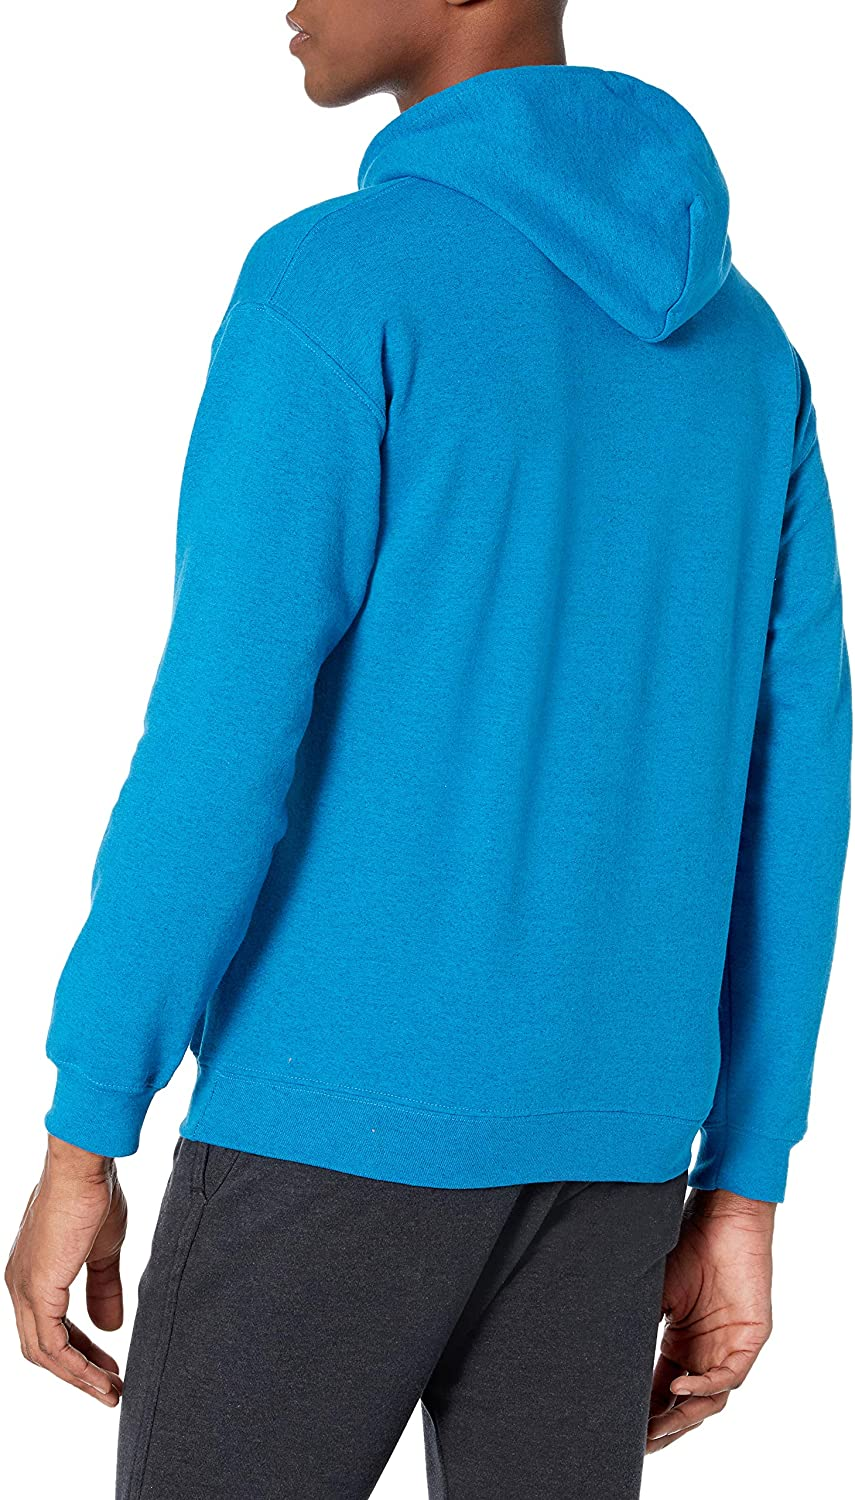 Adult Fleece Hooded Sweatshirt, Style G18500